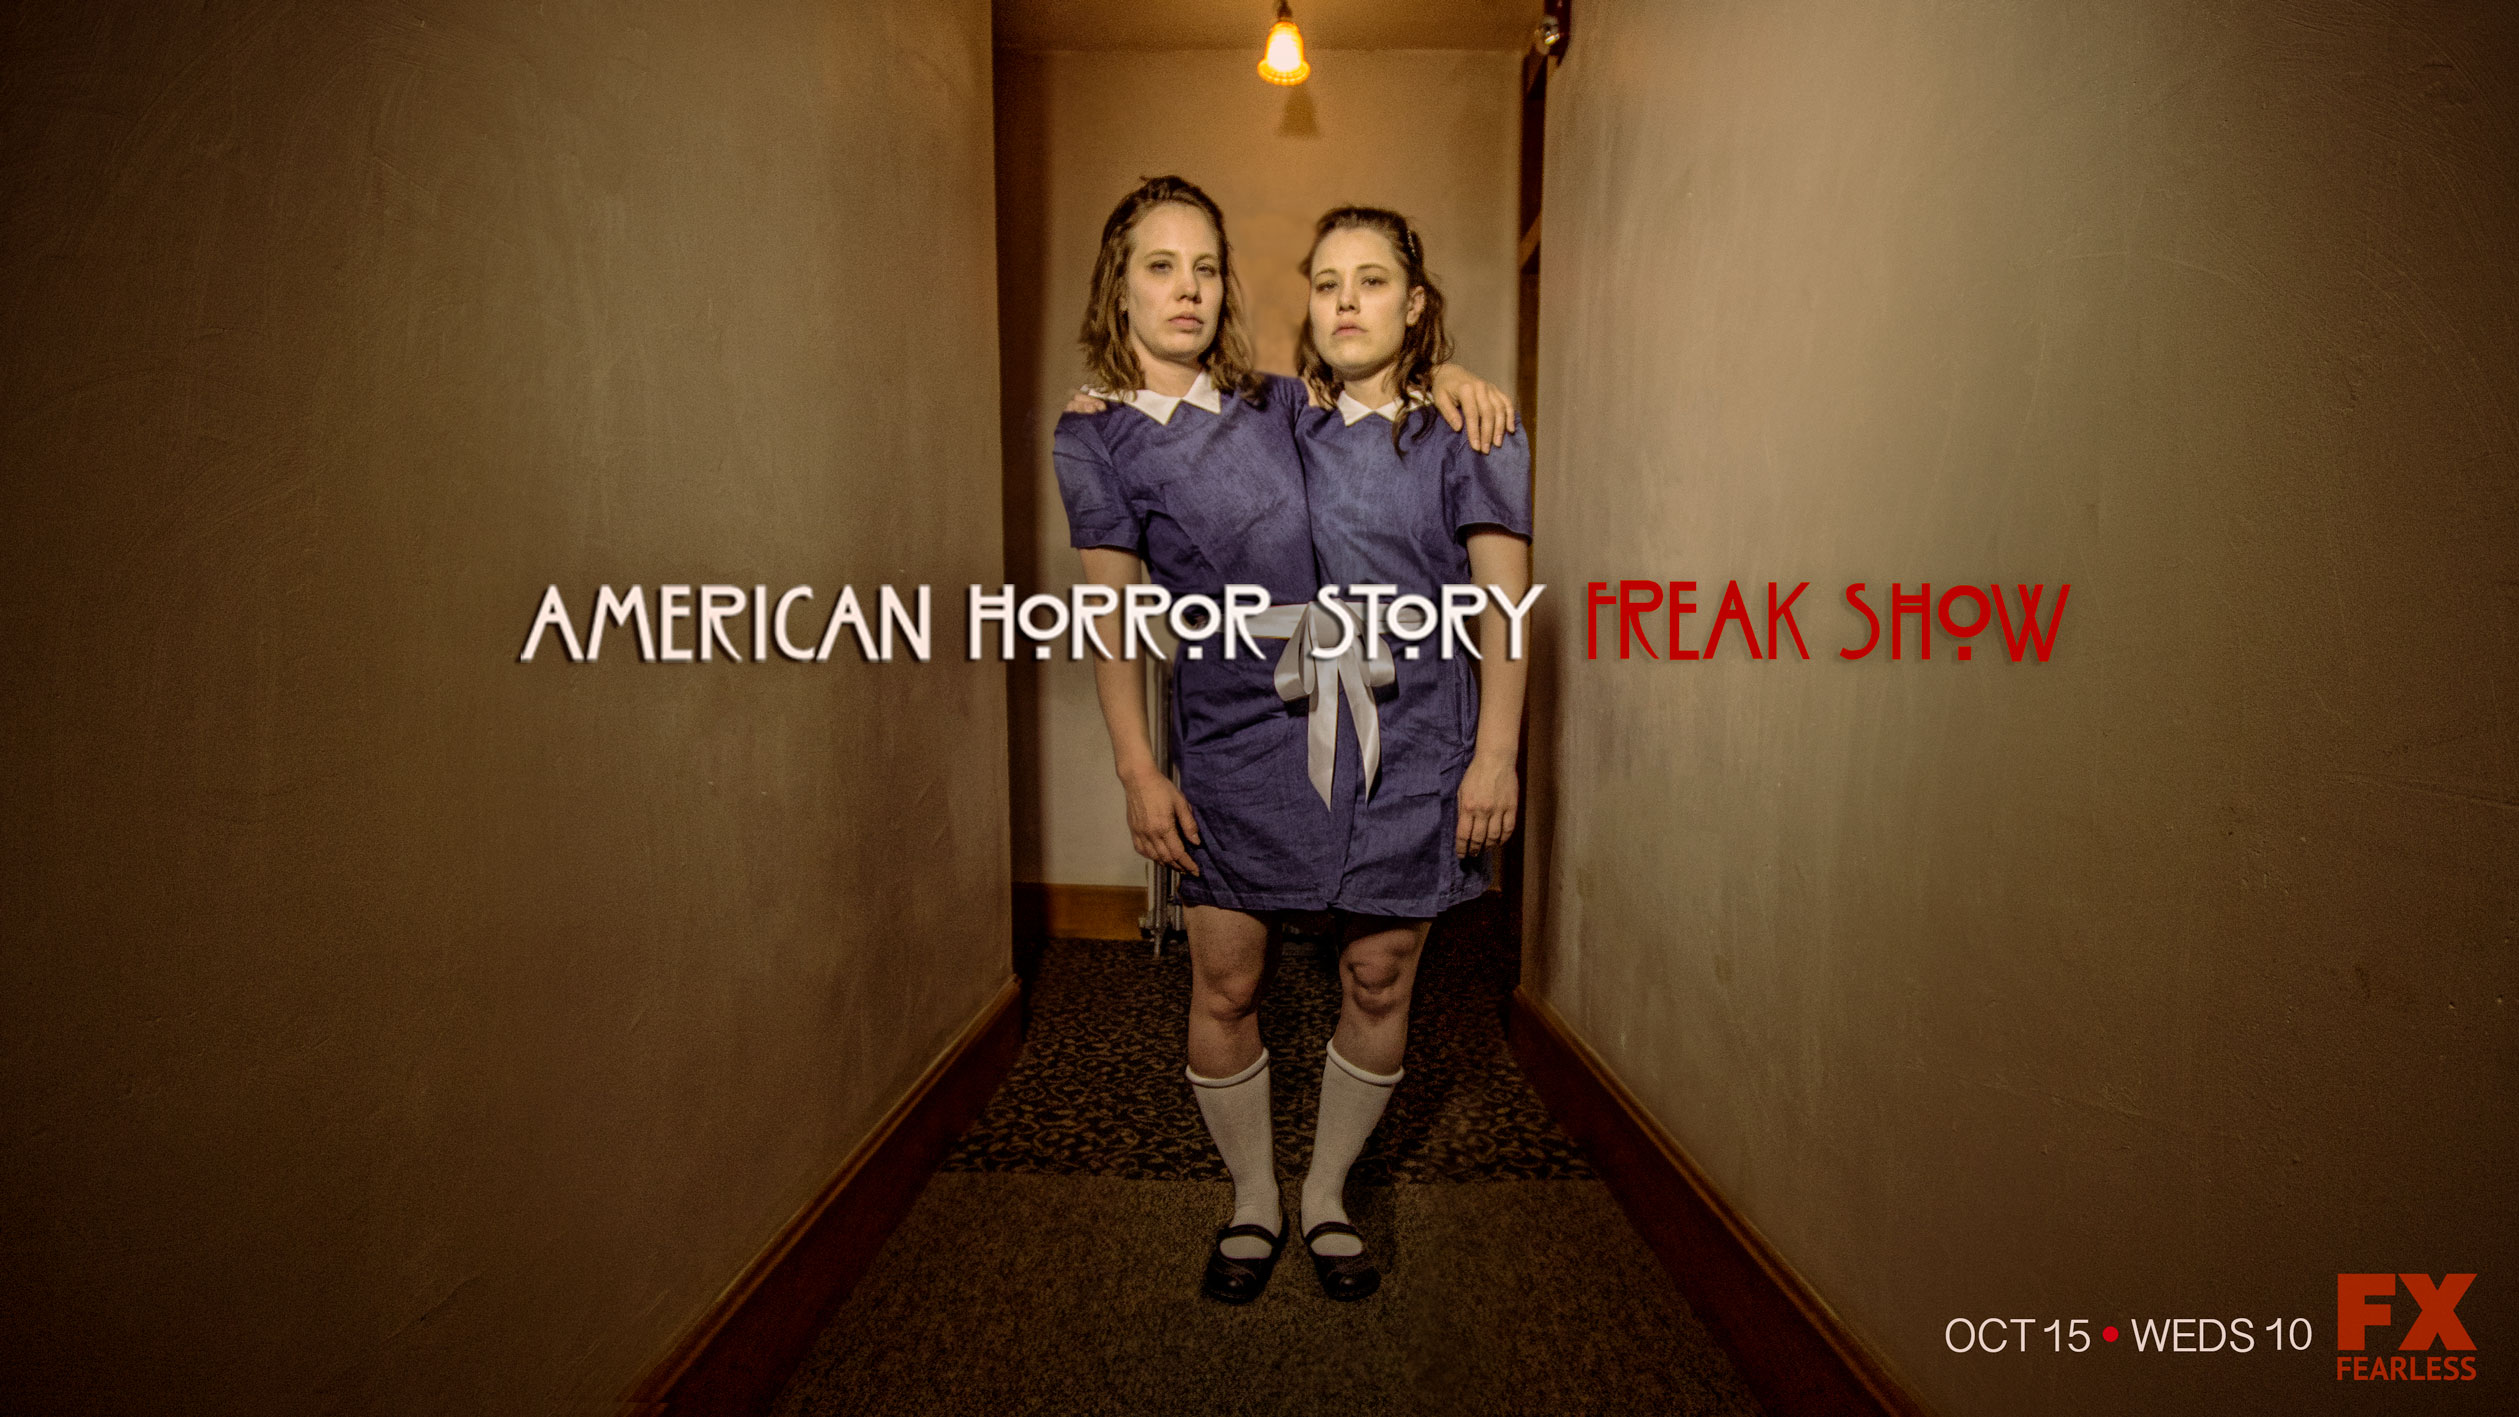 Freaky nieuwe poster 'American Horror Story: Freak Show' - Serietotaal.nl